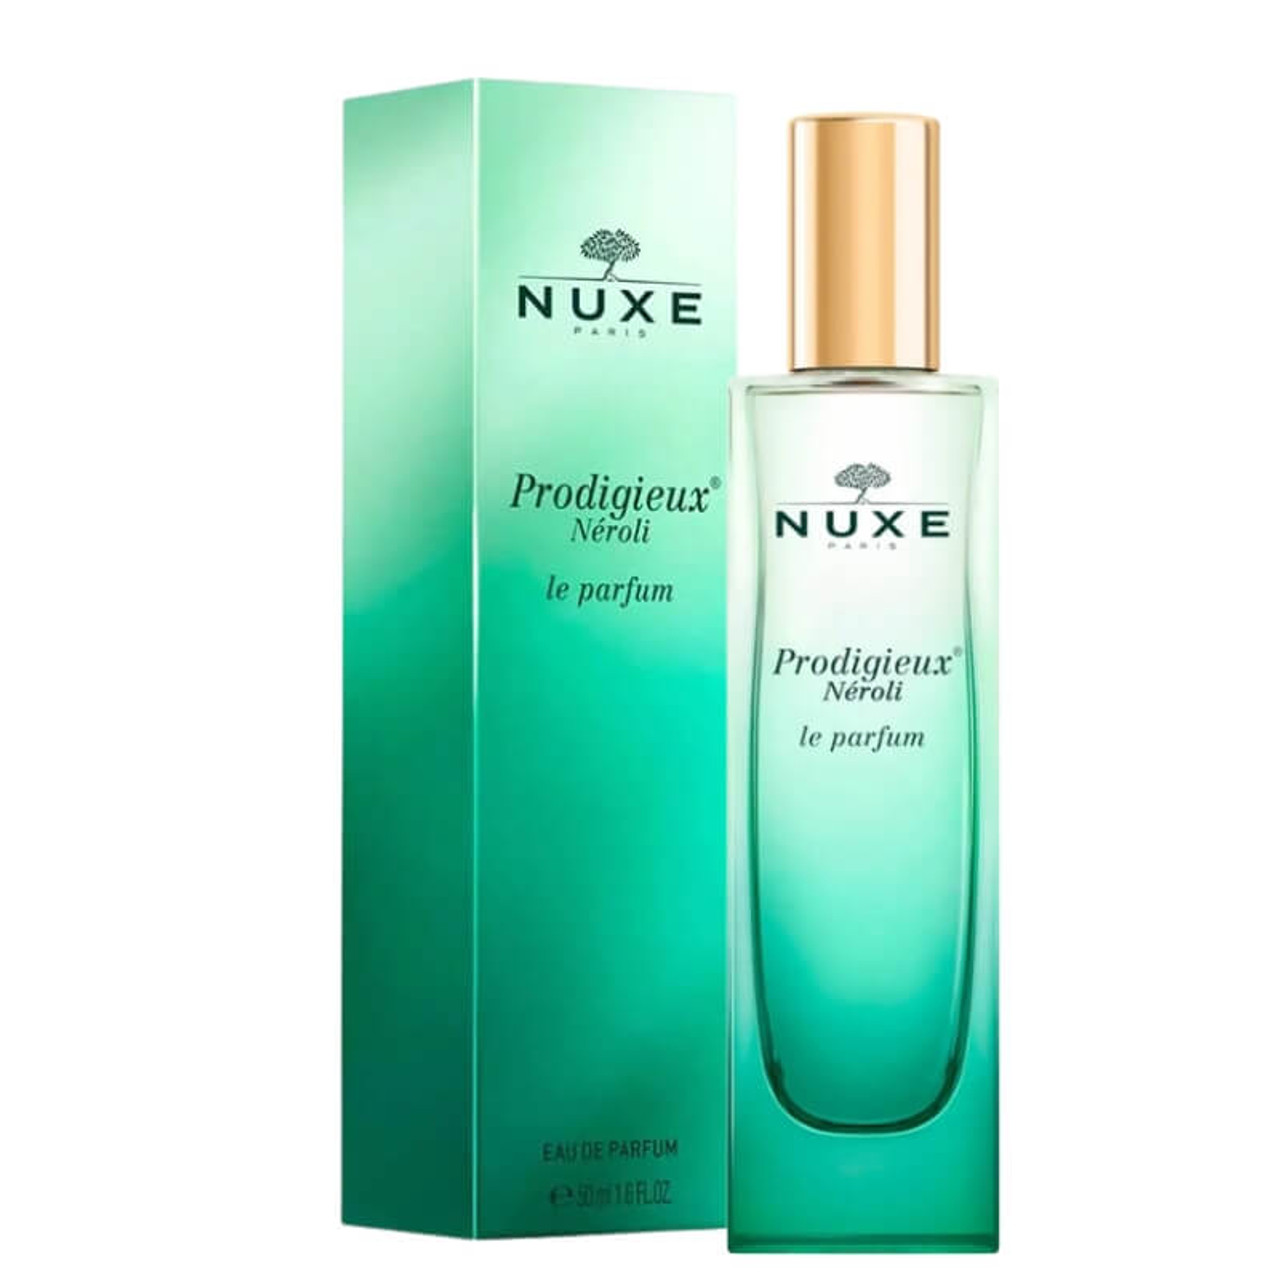 NUXE Prodigieux Neroli 50ml de Parfum Eau Le Parfum